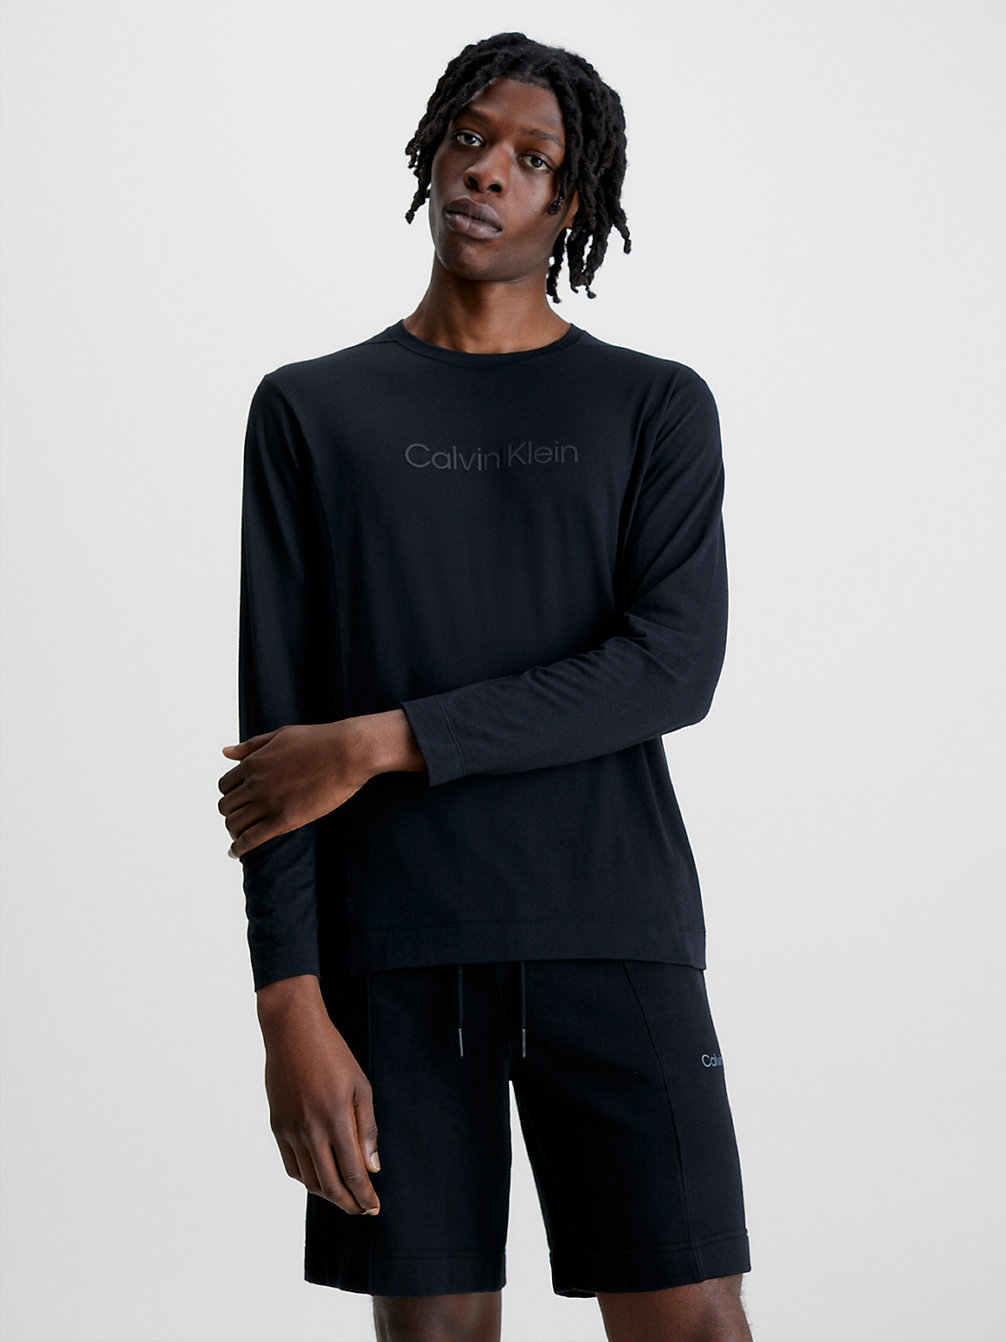 BLACK BEAUTY > Langärmliges Gym-T-Shirt > undefined Herren - Calvin Klein